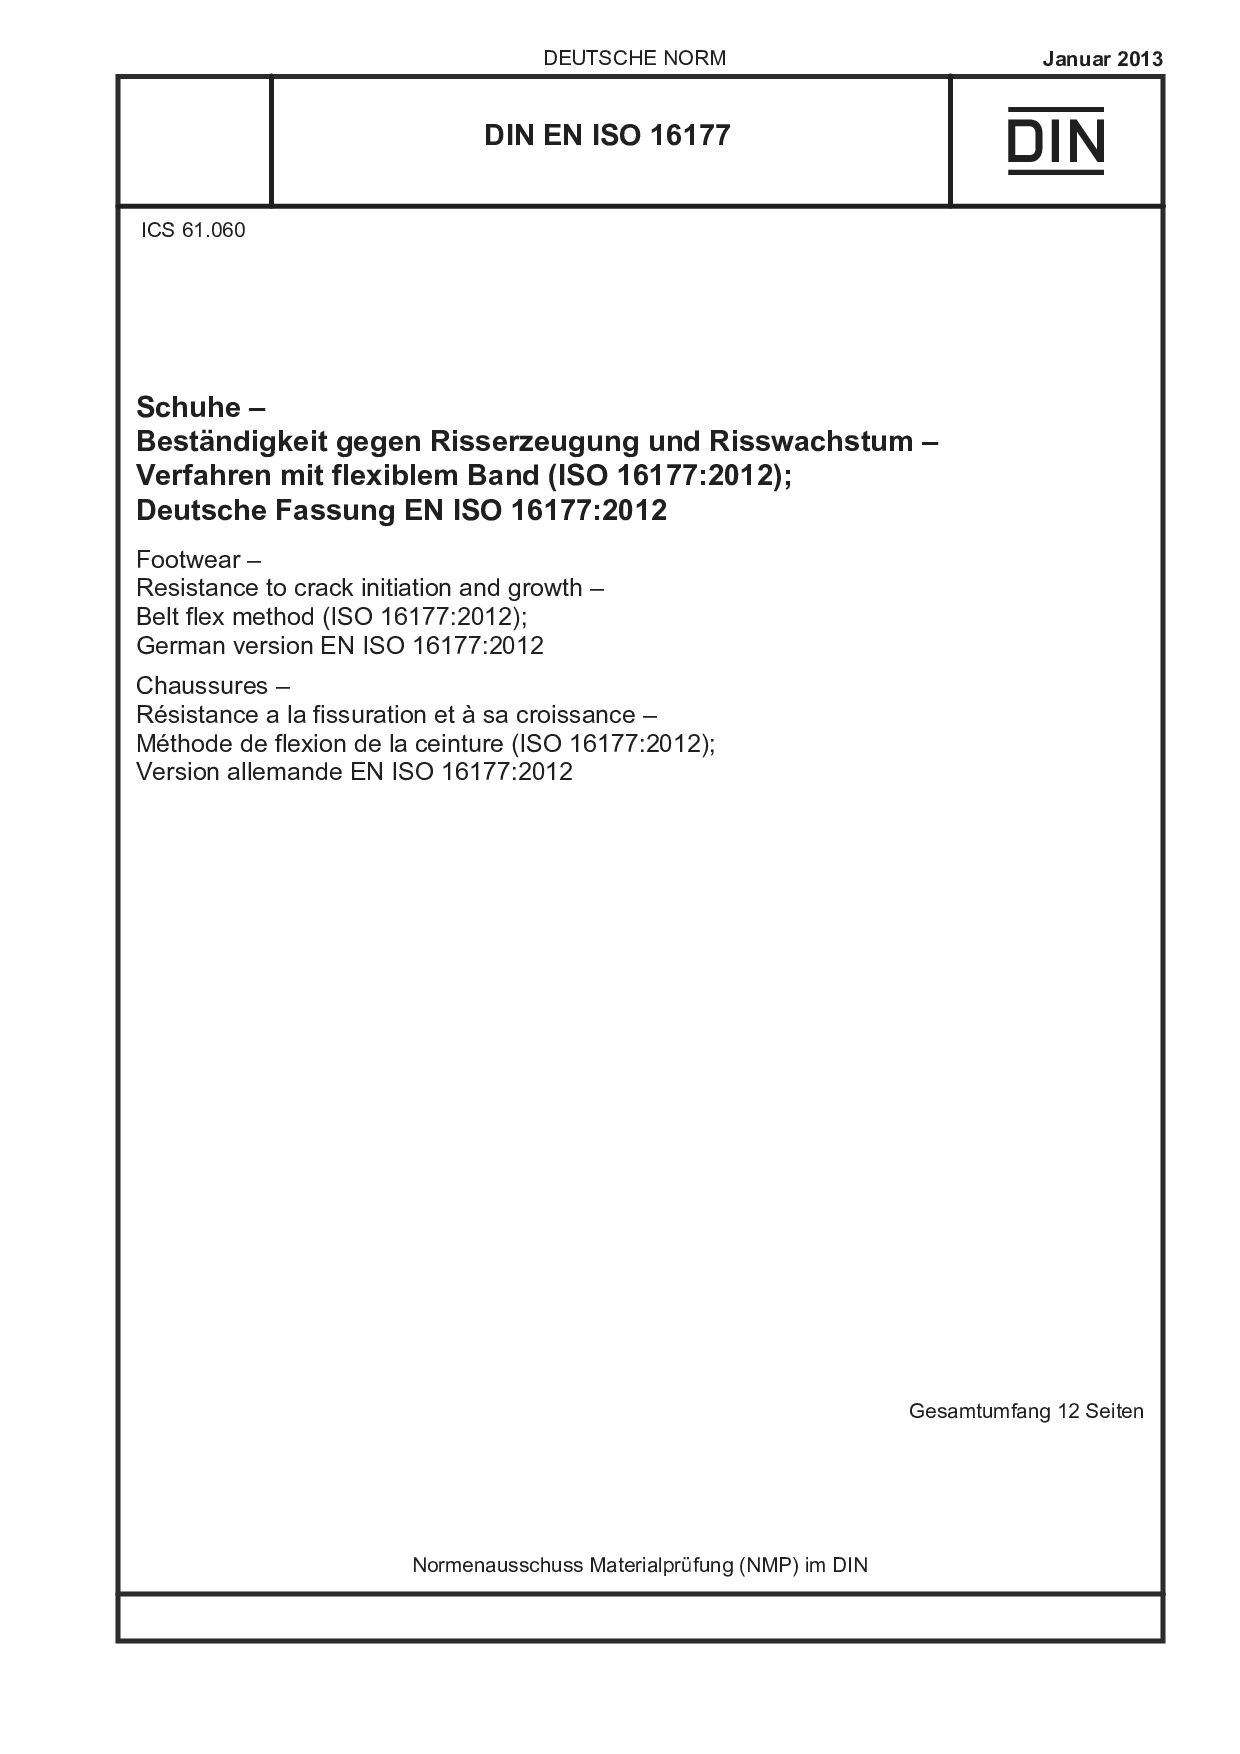 DIN EN ISO 16177:2013